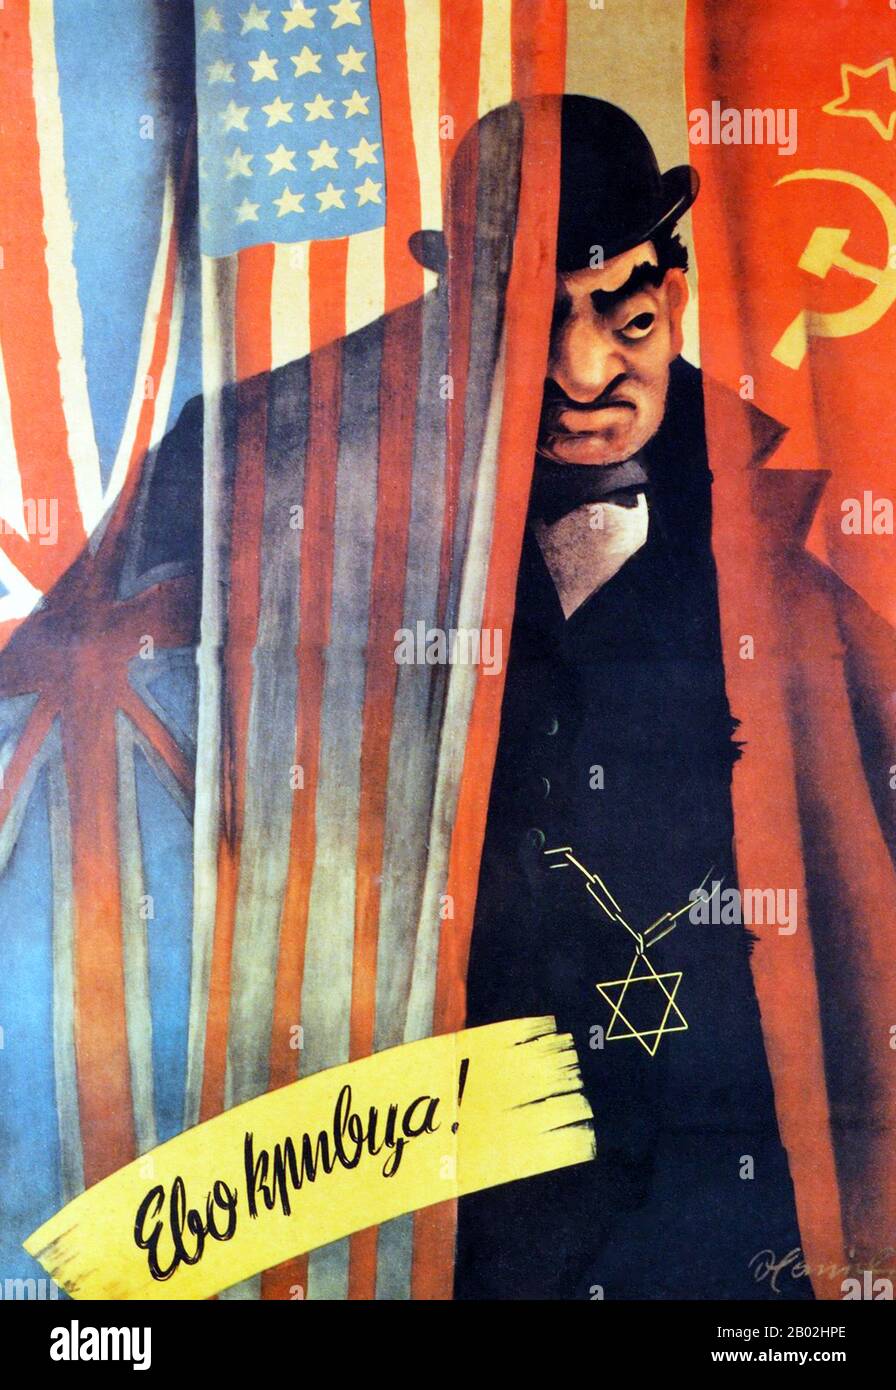 Affiche avec une illustration en couleur d'un Juif se cachant derrière un rideau avec les drapeaux de l'URSS, des Etats-Unis et du Royaume-Uni. Dans la partie inférieure, la légende 'coupable' est imprimée en serbe. Peut-être produit par des collaborateurs de Chetnik avec les forces nazies occupant l'ex-Yougoslavie entre 1941 et 1945. Banque D'Images